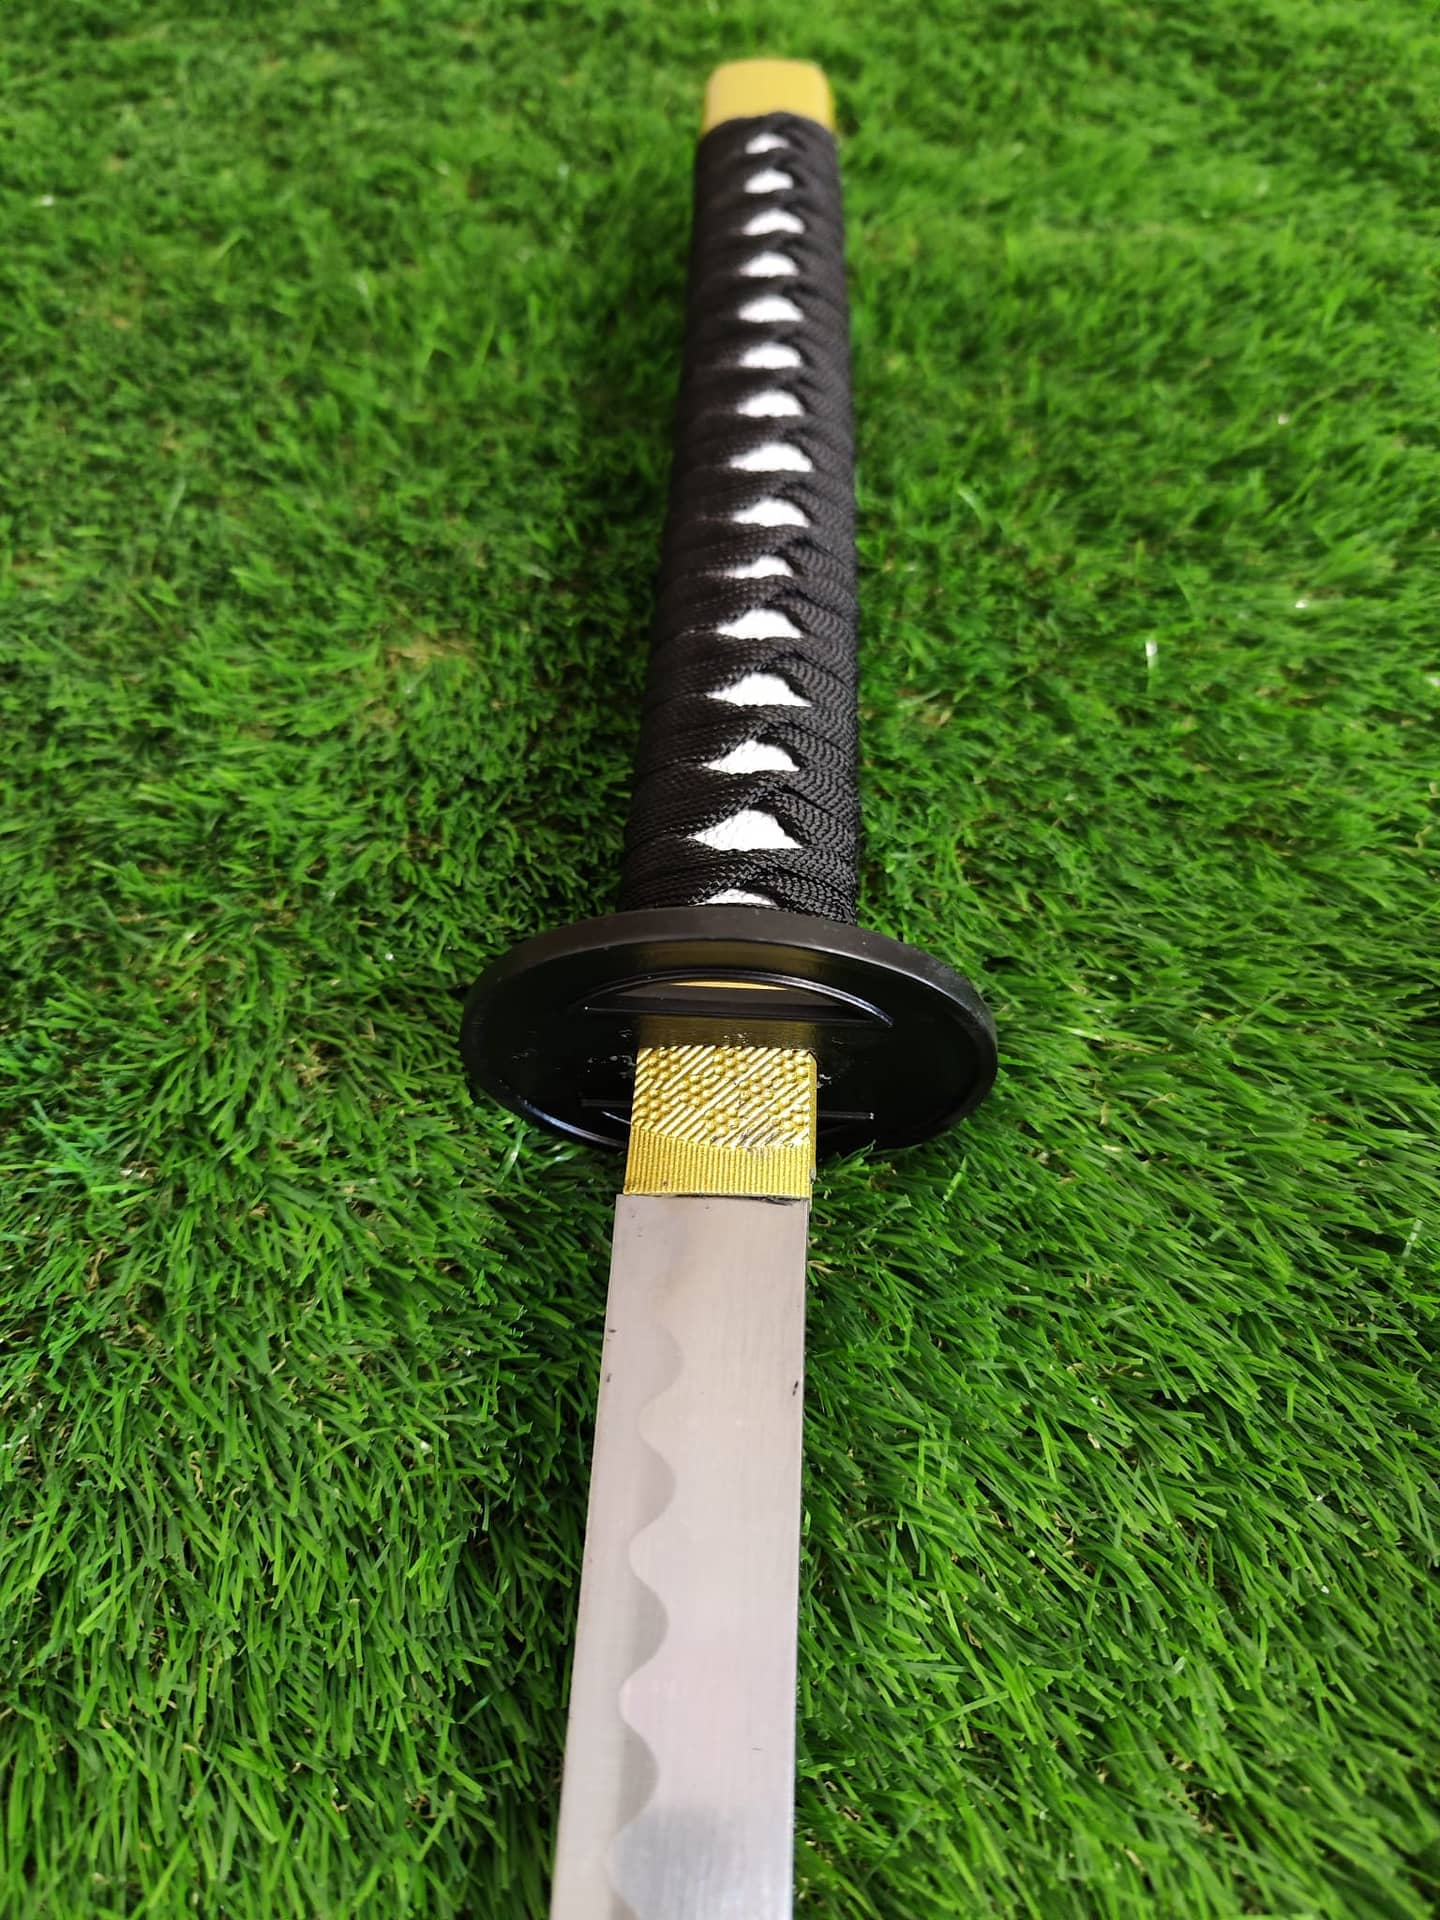 Obtenga calidad espada katana de madera para su colección